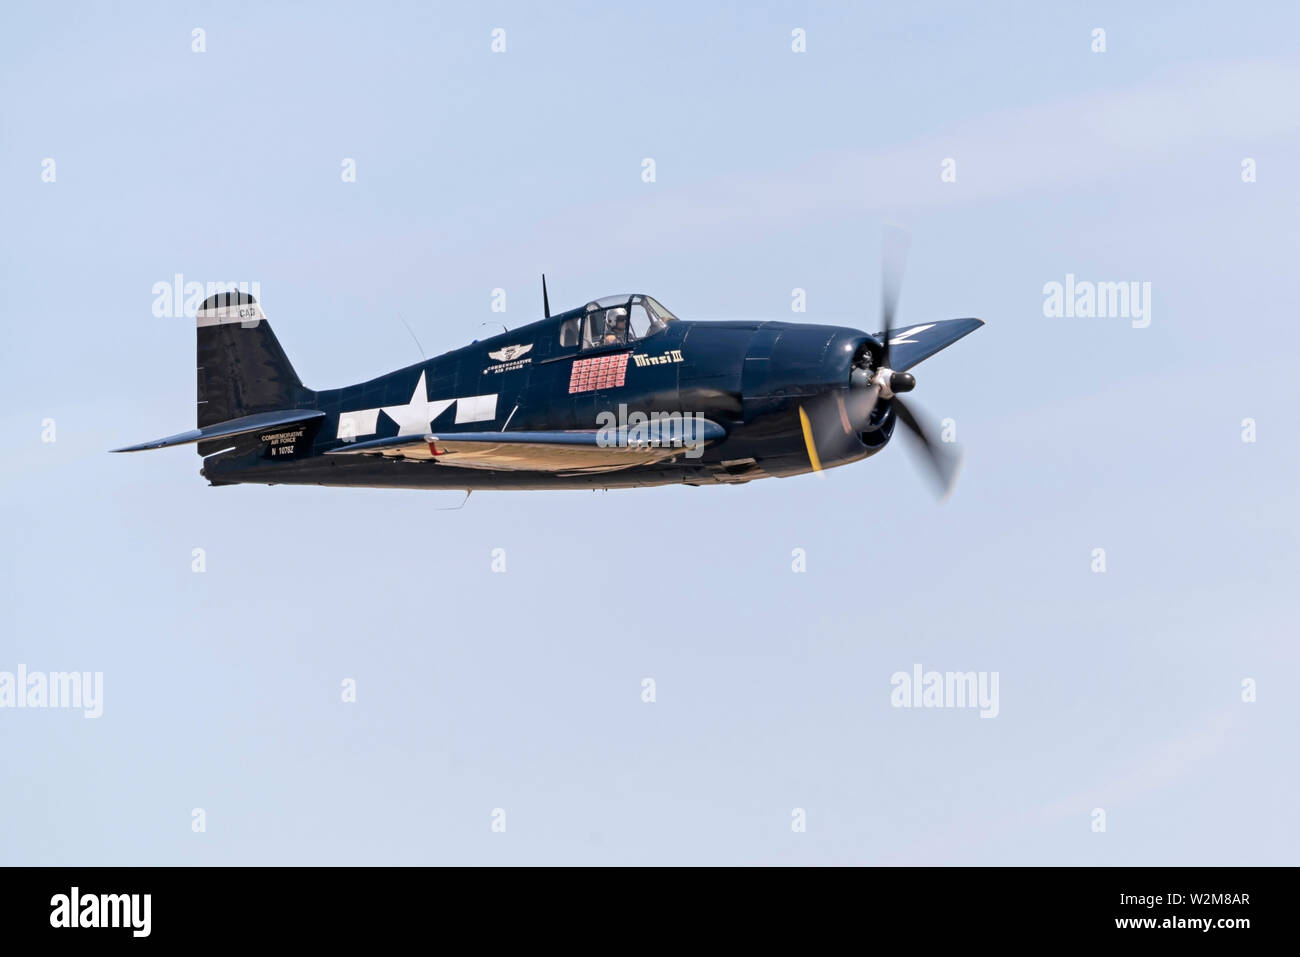 Airplane Grumman F6F Hellcat WWII fighter voler à un spectacle aérien de la Californie Banque D'Images